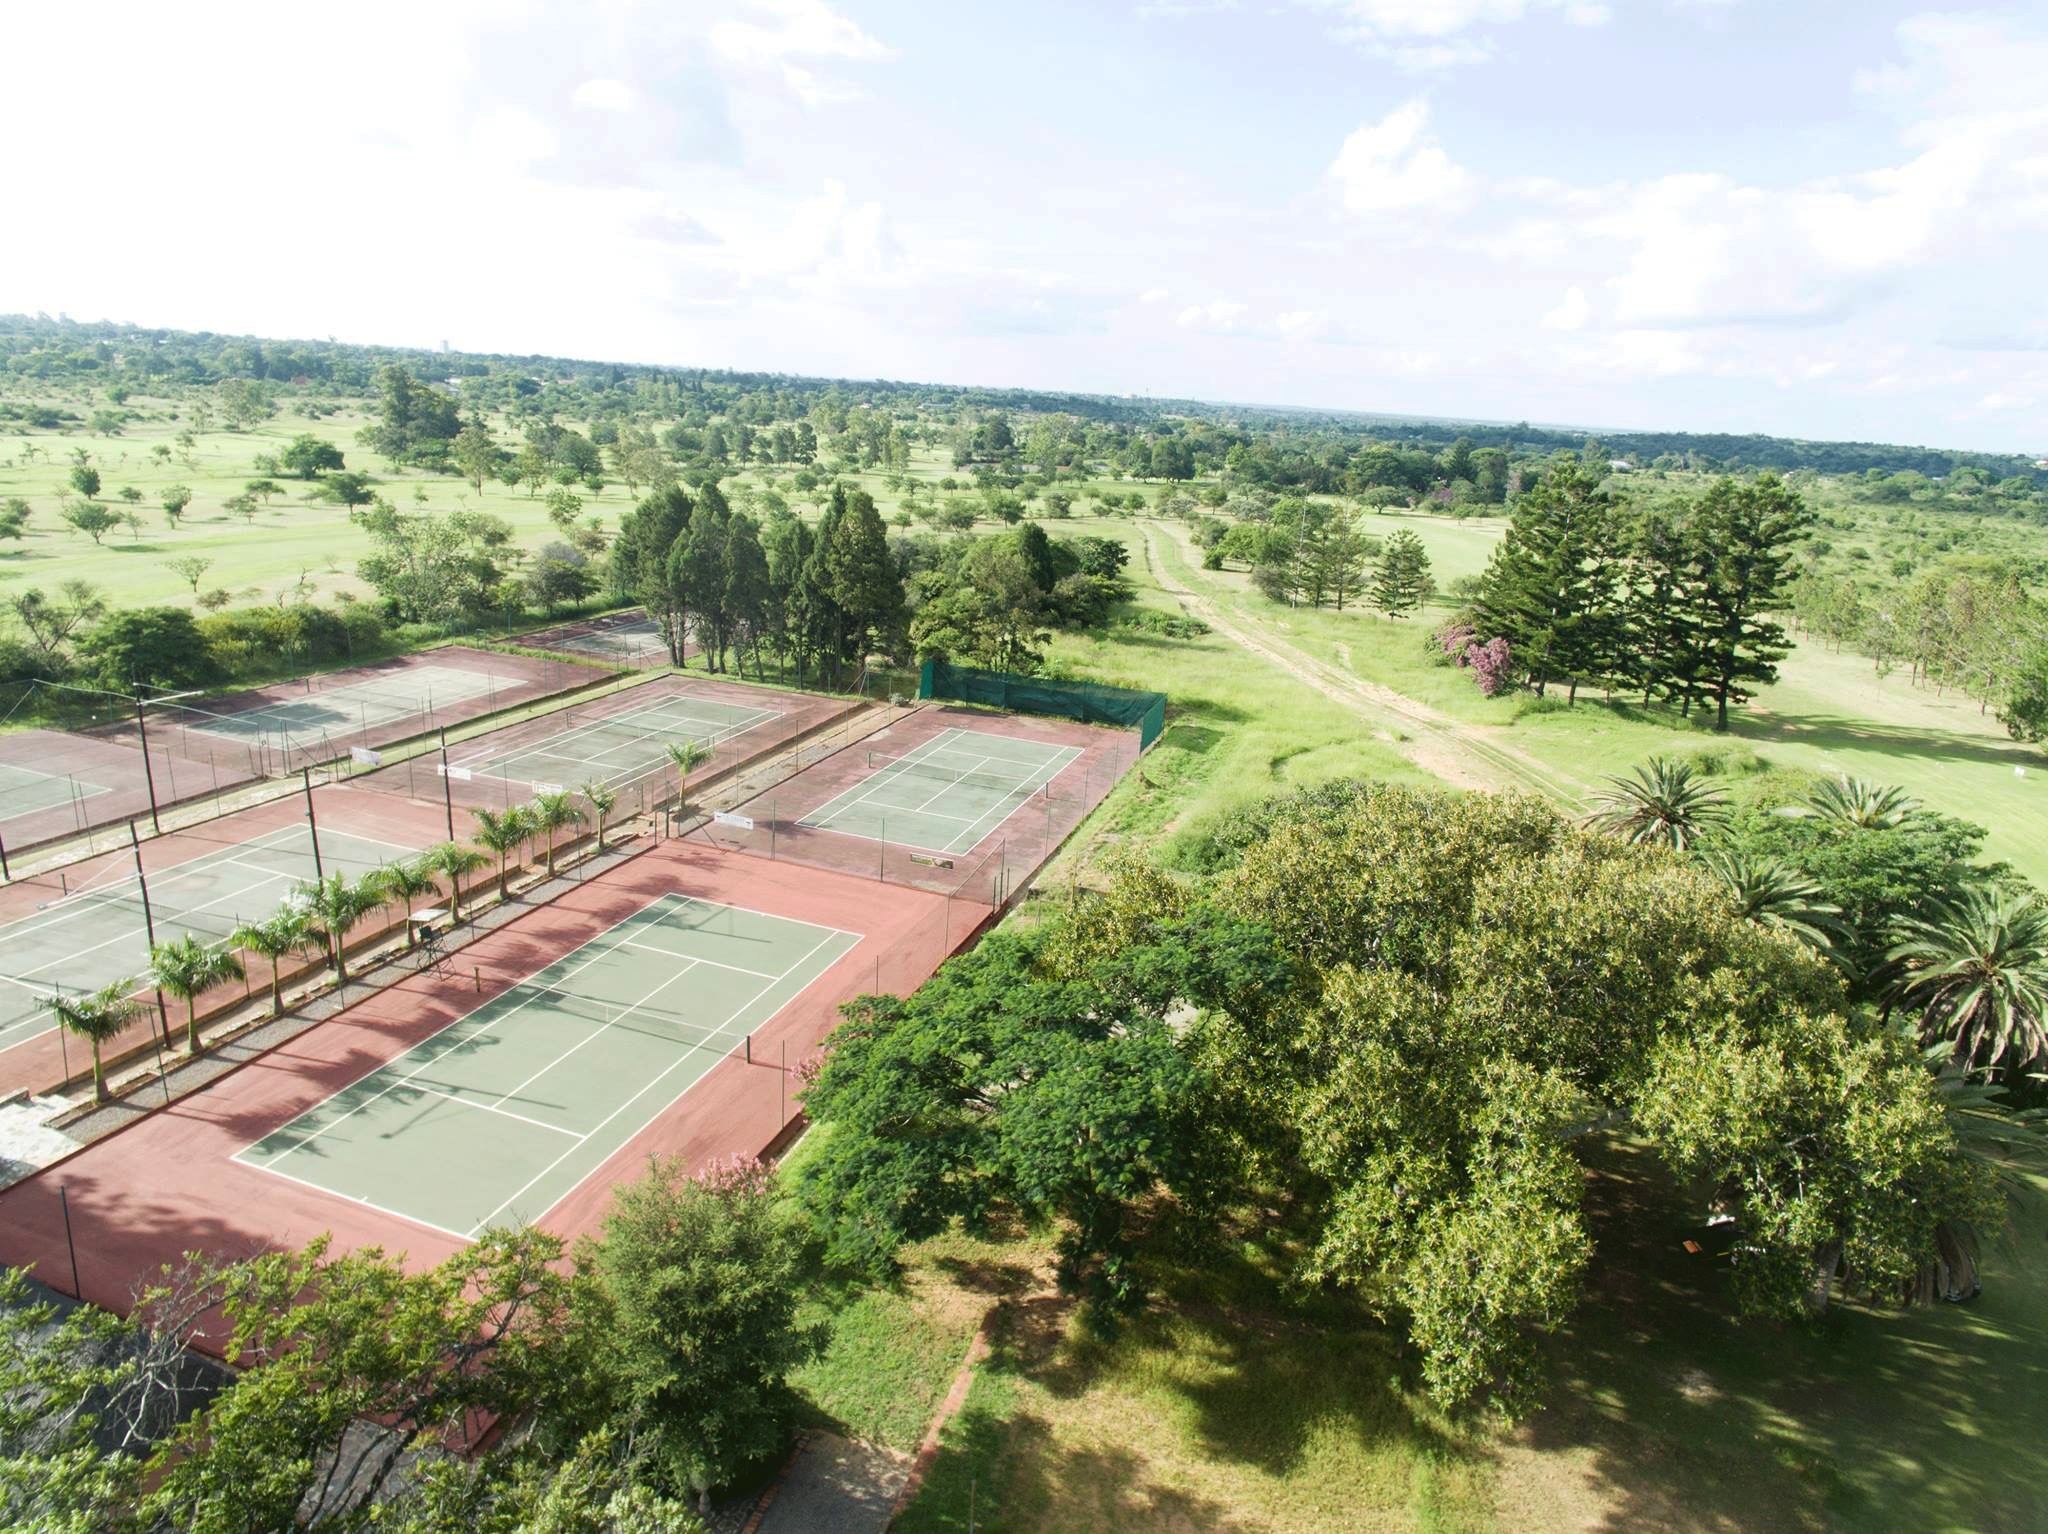 cl_golf_bcc_tennis_courts_fairway